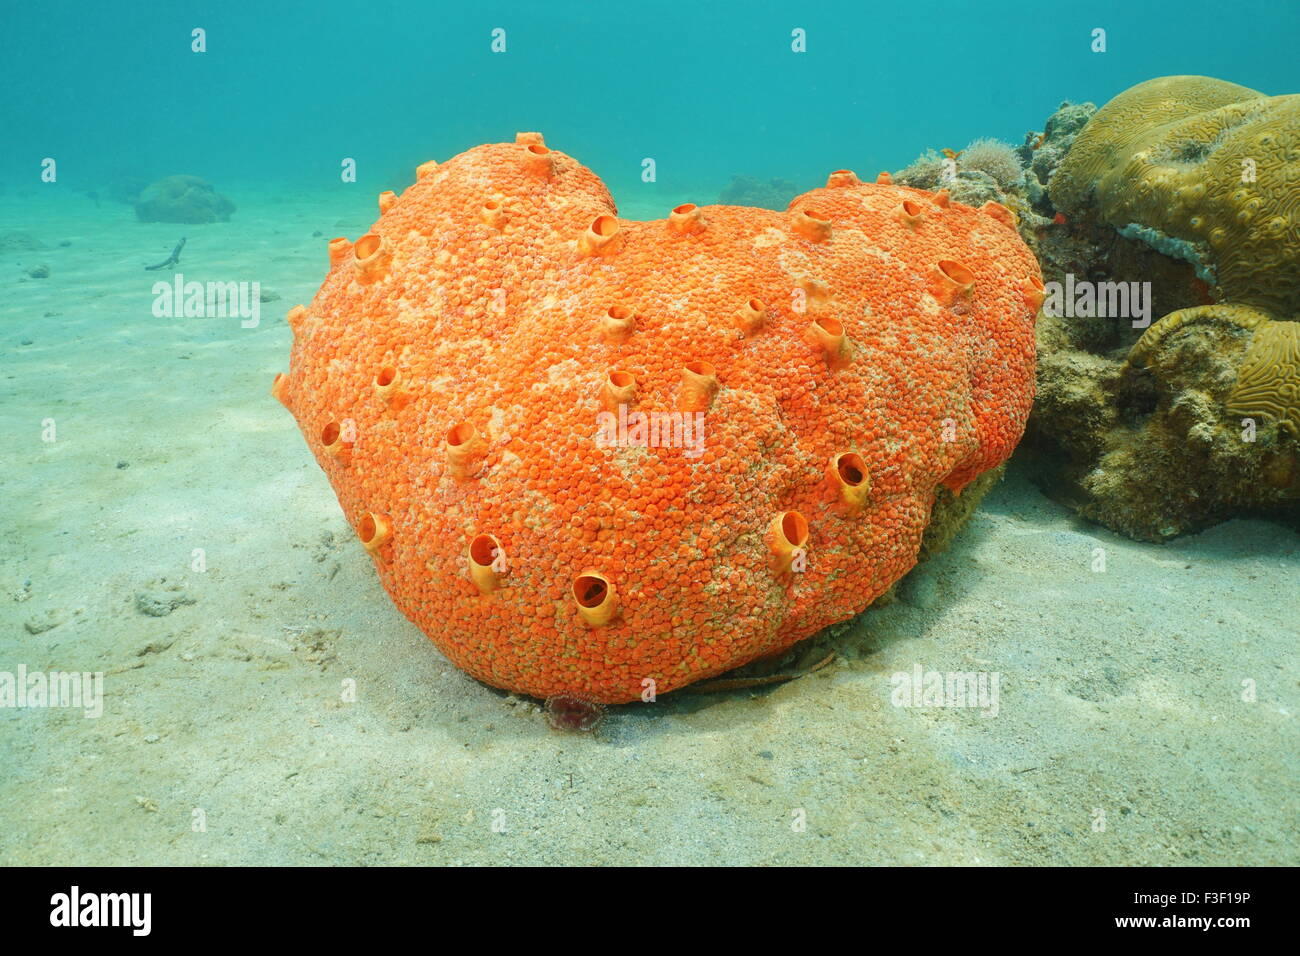 Sea life underwater, red boring sponge, Cliona delitrix, Caribbean sea Stock Photo